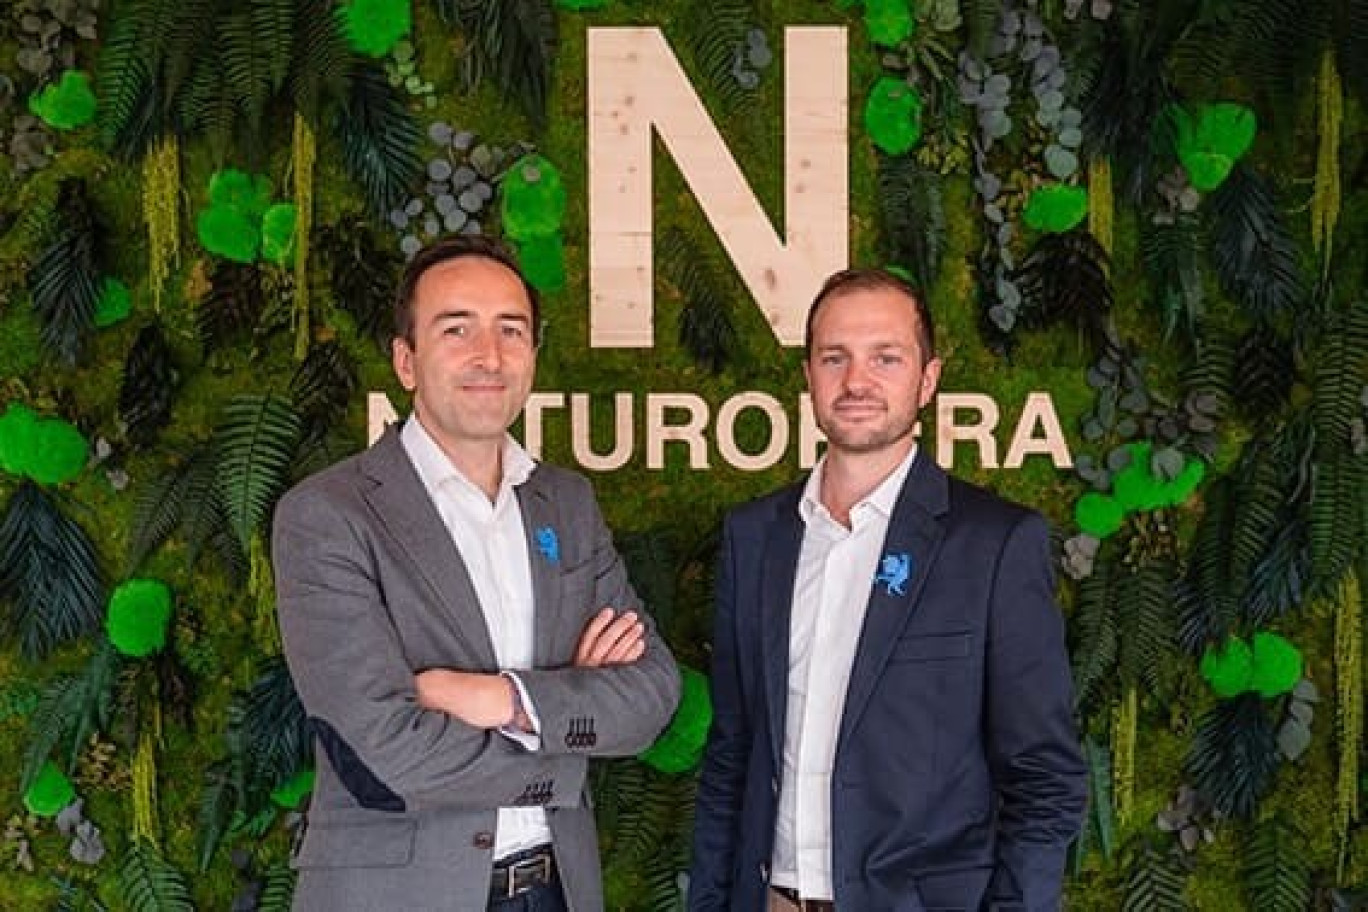 Geoffroy Blondel de Joigny et Kilian O'Neil, fondateurs de Naturopera. © Naturopera